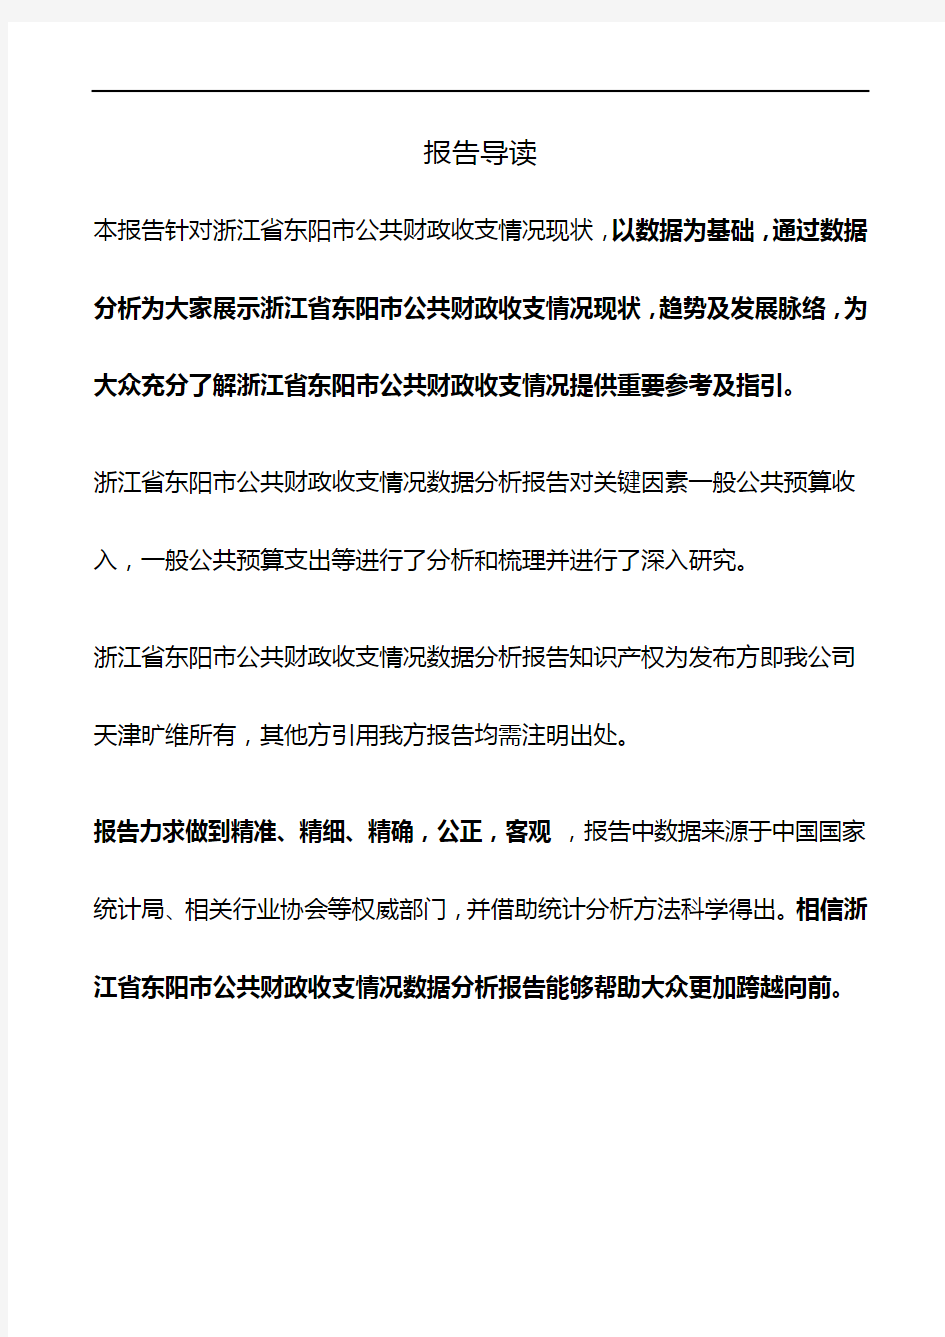 浙江省东阳市公共财政收支情况3年数据分析报告2019版